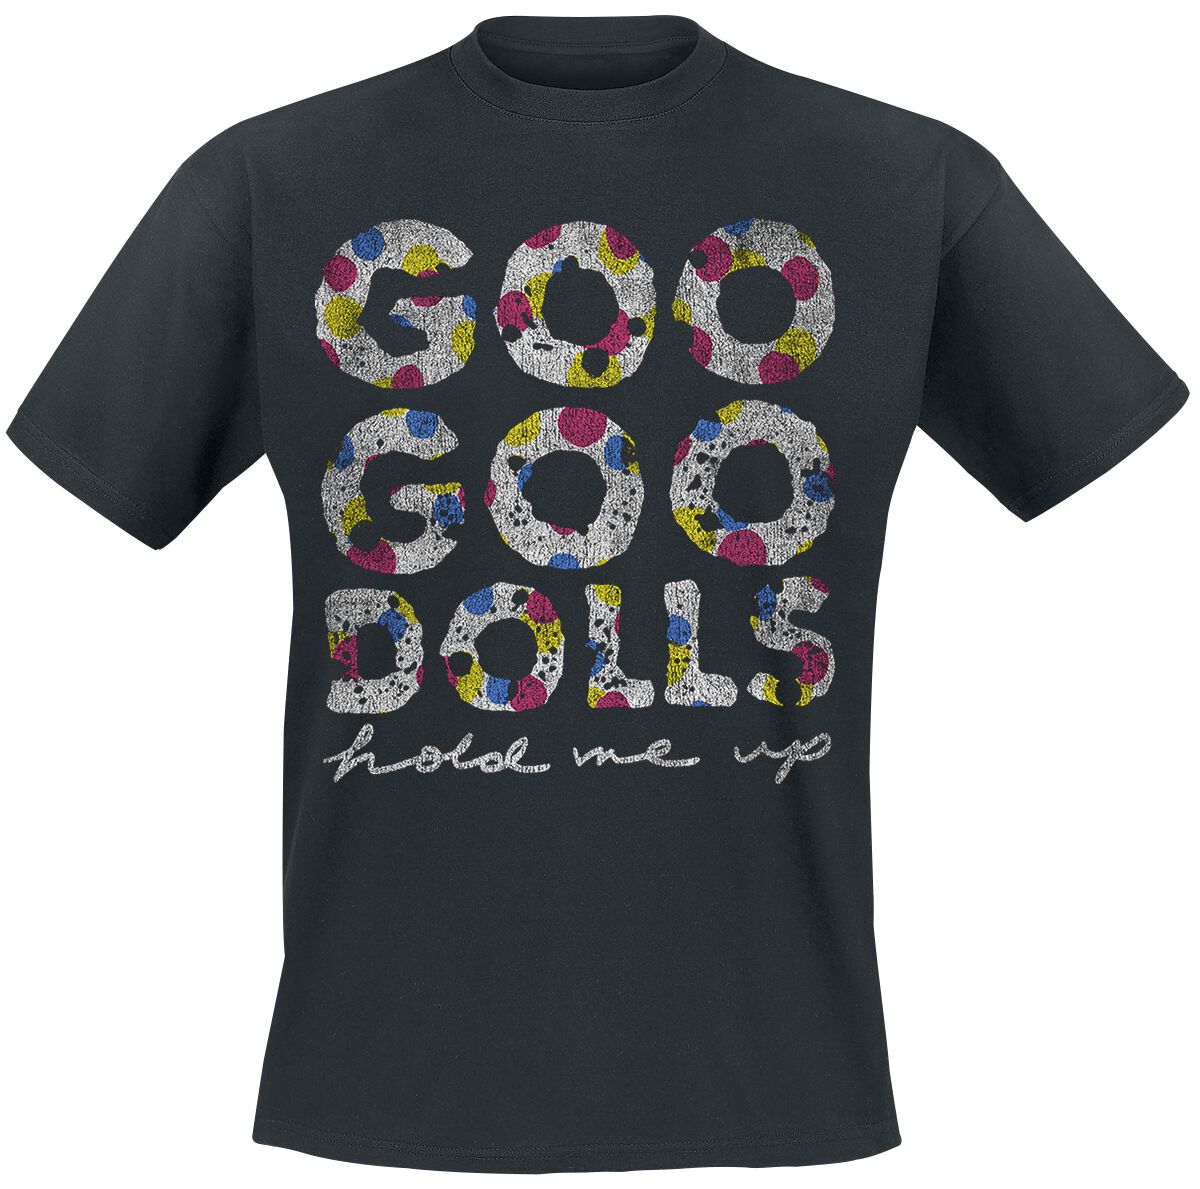 Goo Goo Dolls Birthday T-Shirt black